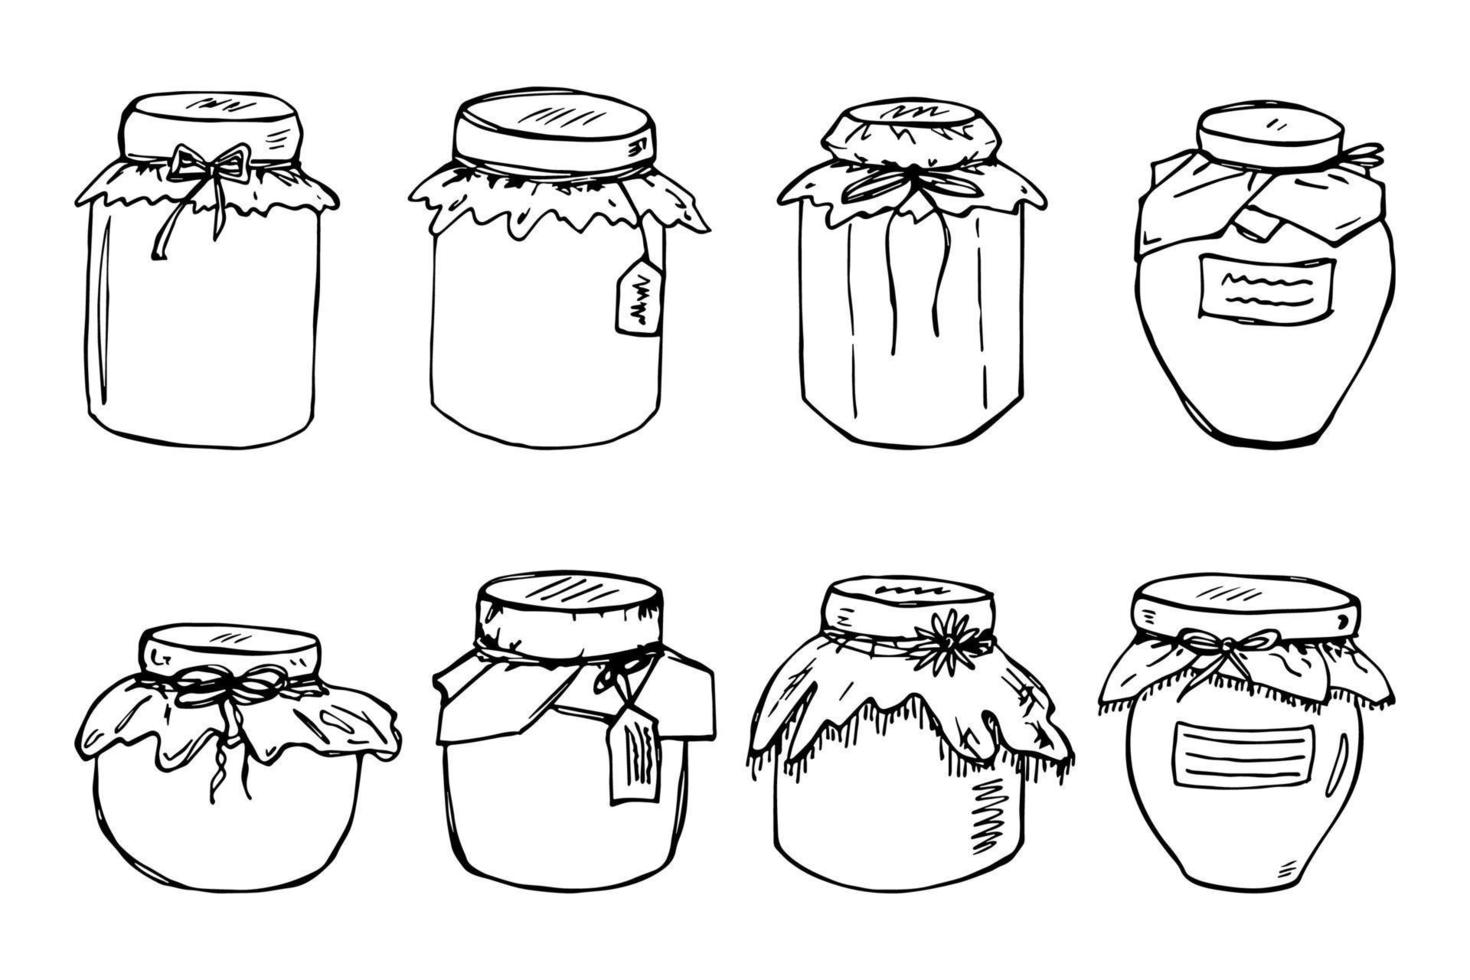 hand- getrokken pot van jam of honing clip art. gezond natuurlijk biologisch Product tekening set. vector